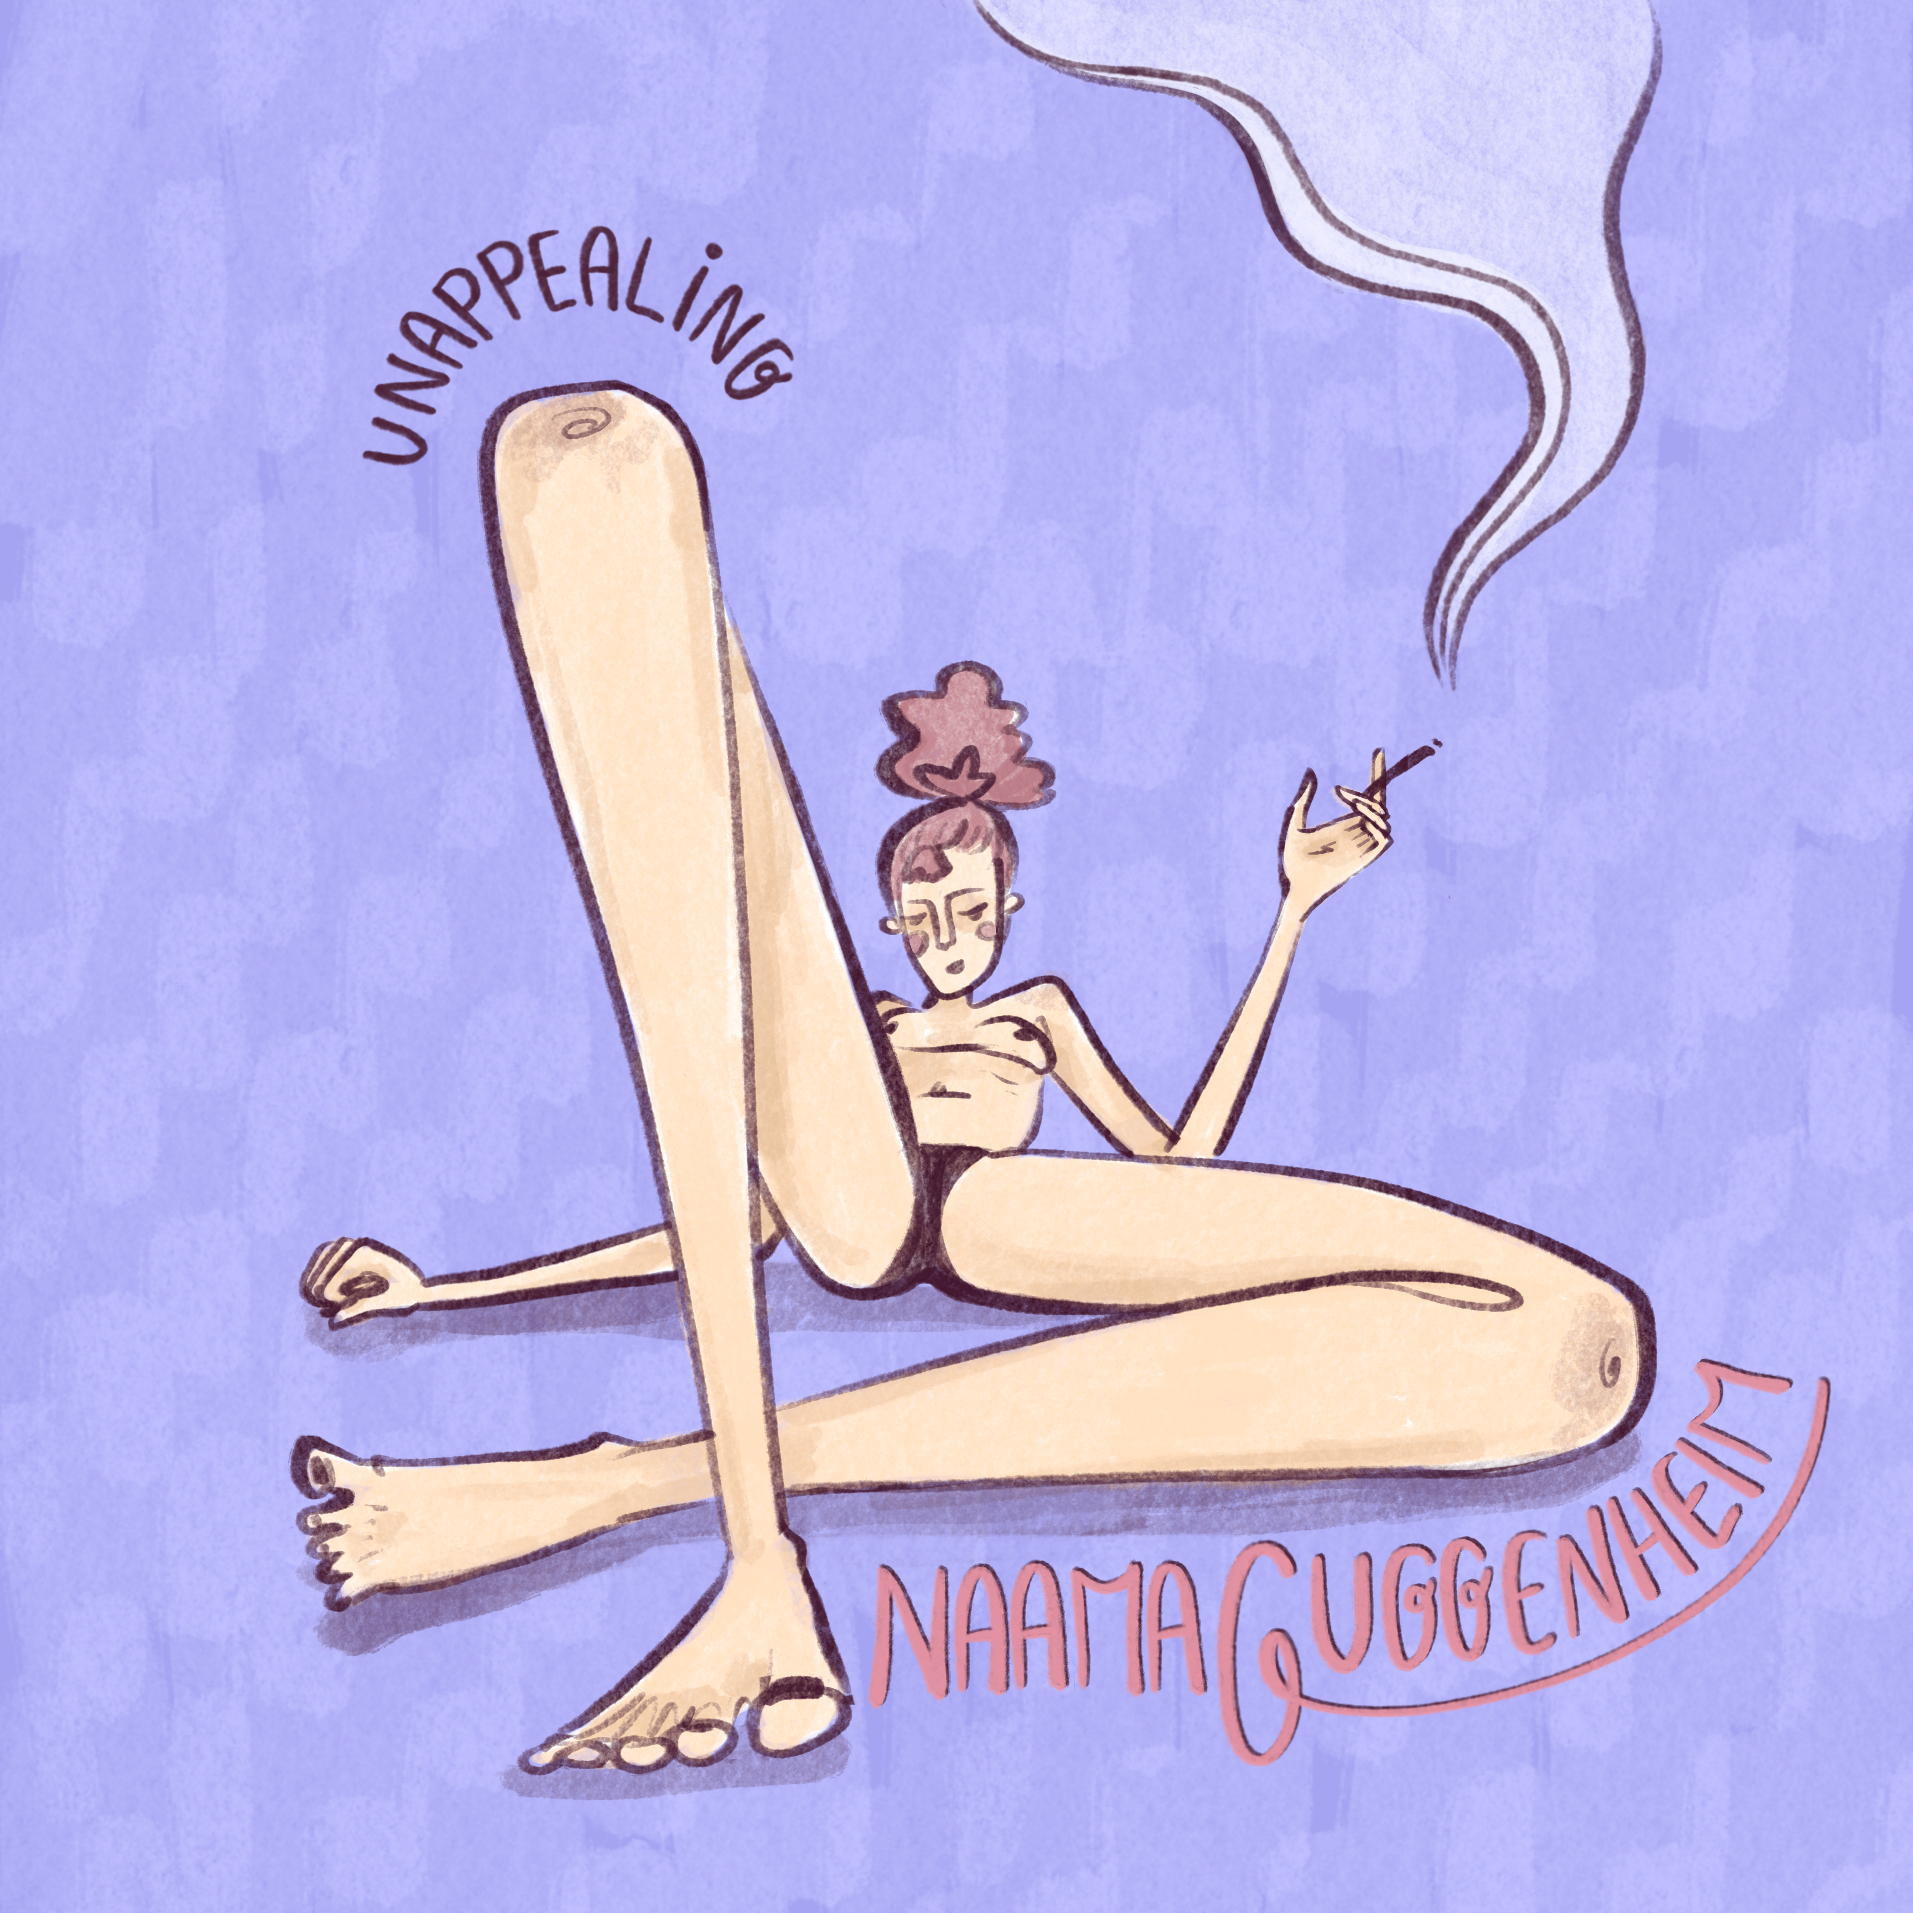 Albumcover Naama Guggenheim mit einer gezeichneten Frau die rauchend nur mit einem Slip bekleidet entspannt liegt